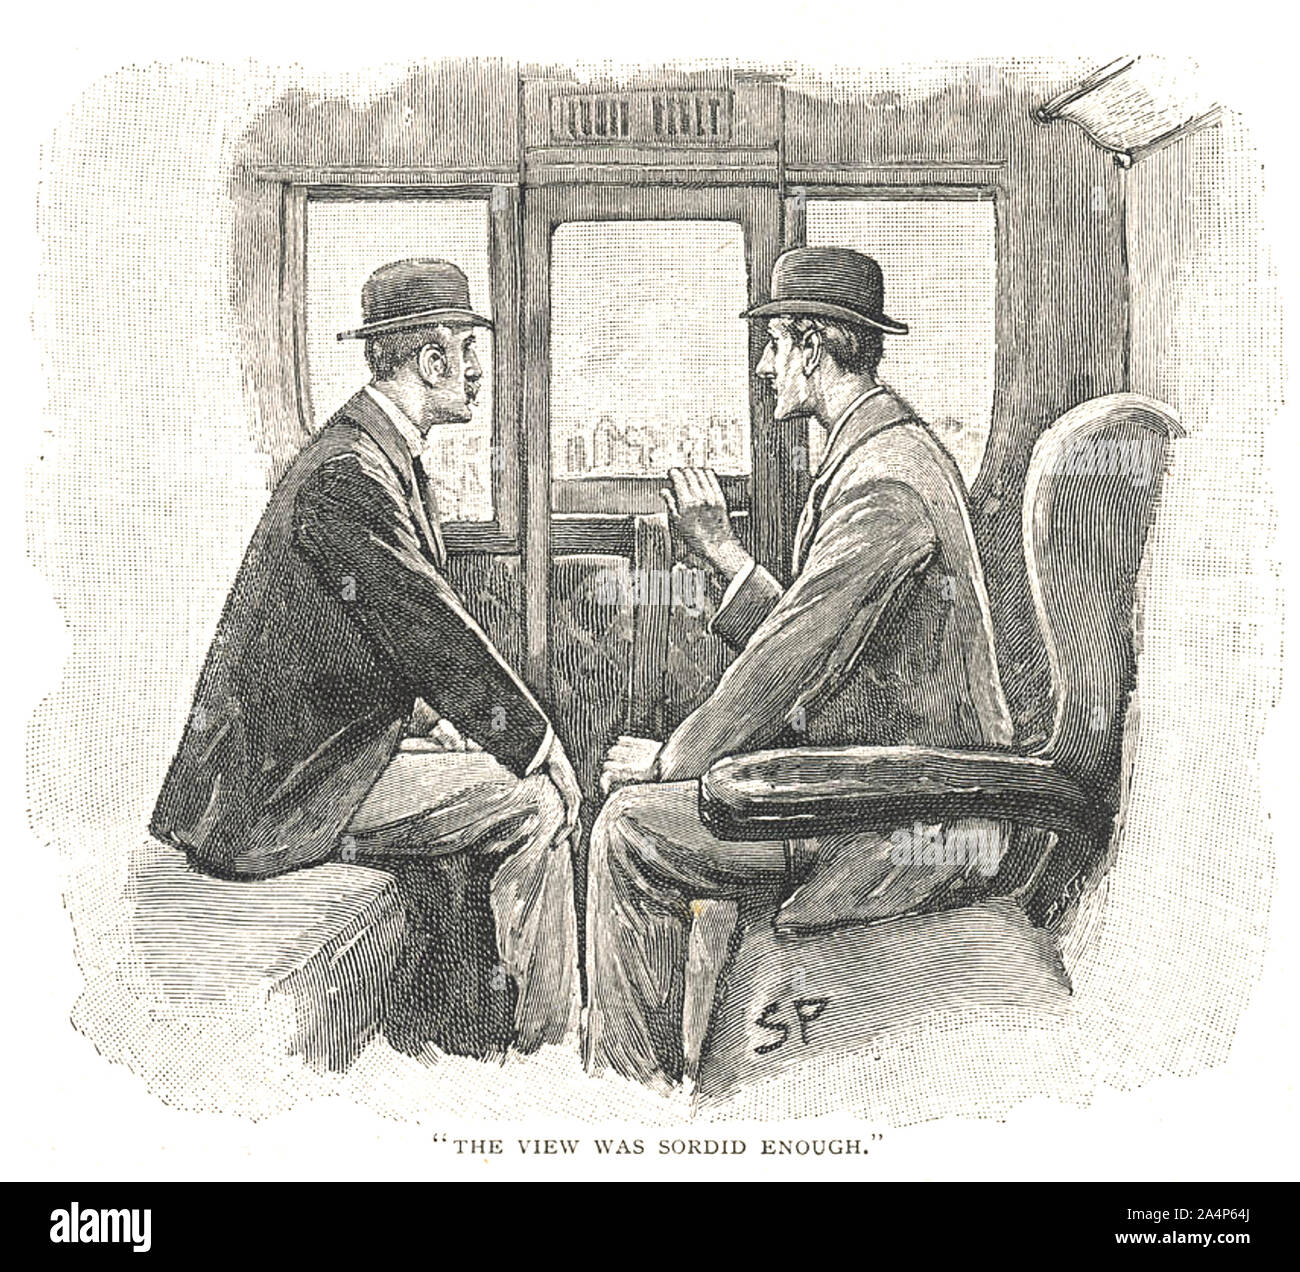 Die ABENTEUER DER NAVAL VERTRAG 1893 Sherlock Holmes Kurzgeschichte von Arthur Conan Doyle. Holmes im rechten mit Dr. Watson. Stockfoto